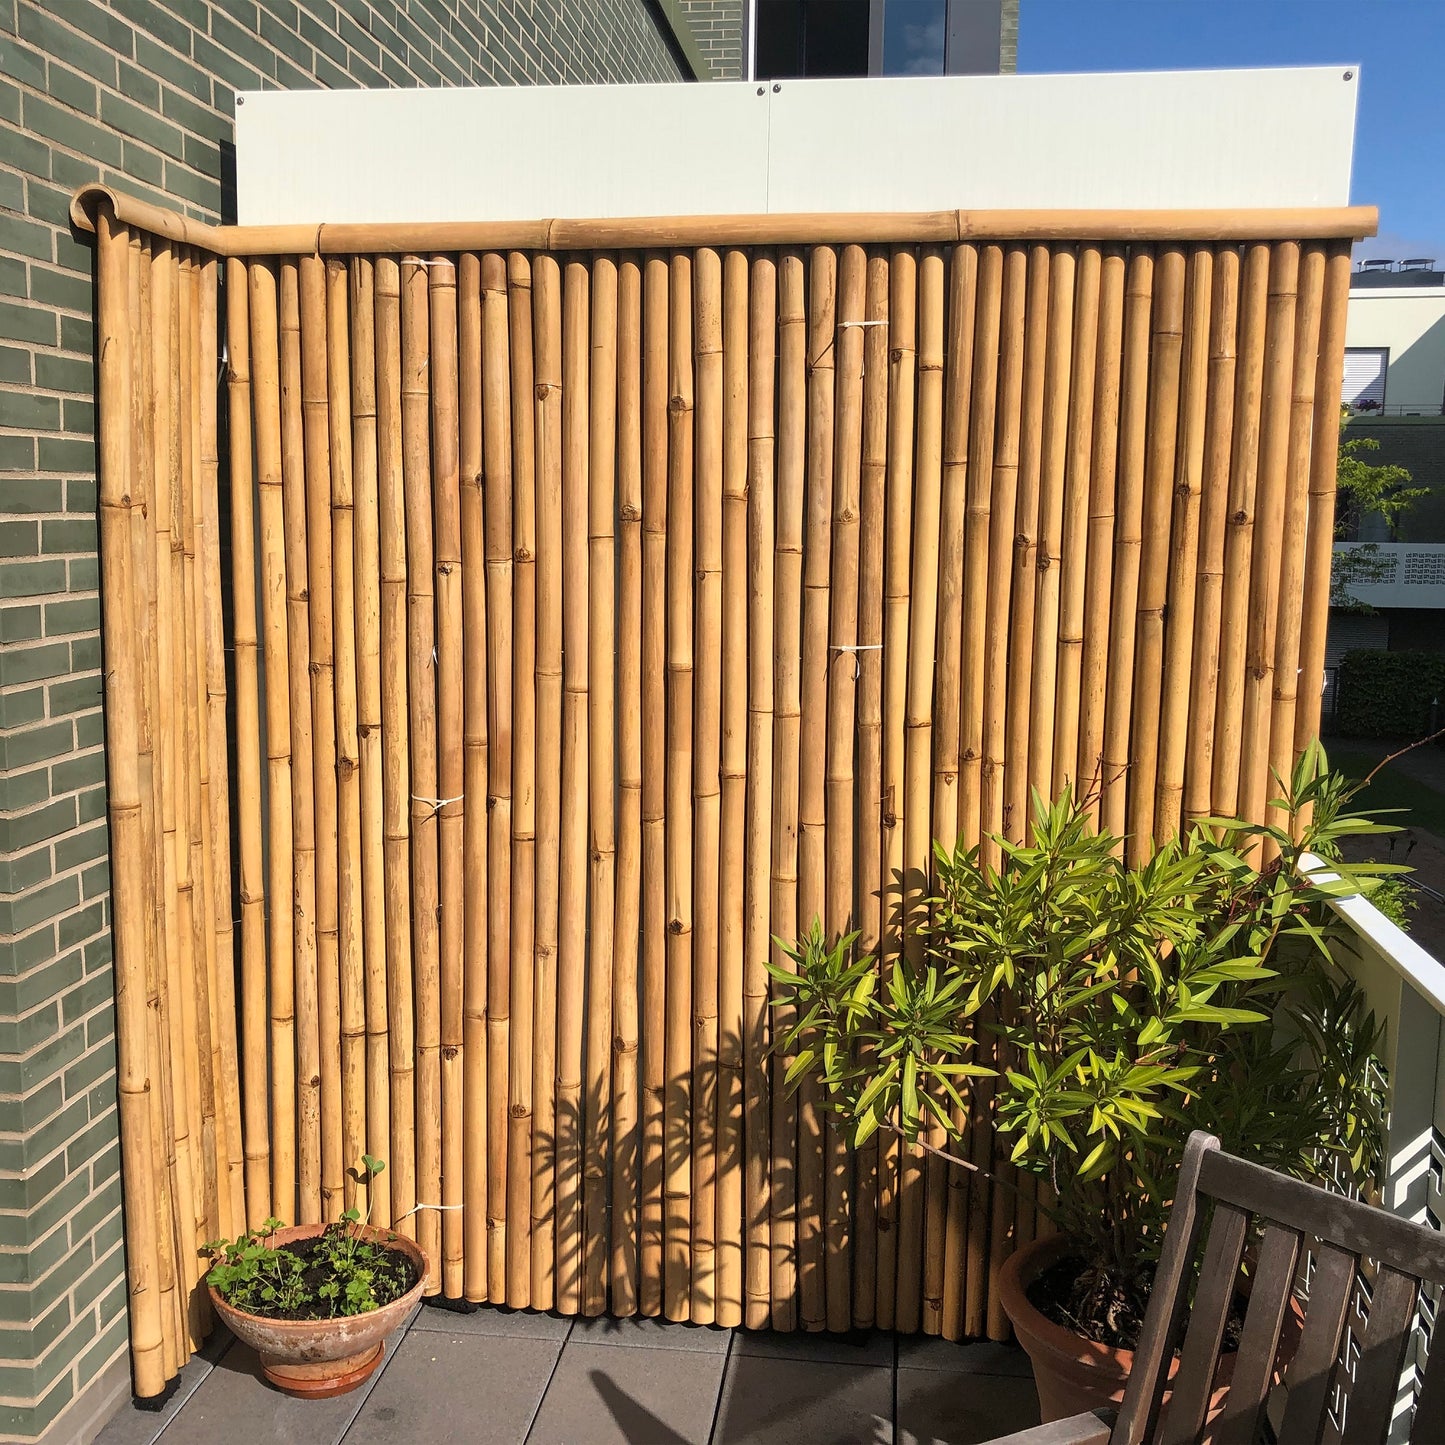 Rollmatte / Sichtschutz / Wandverkleidung aus hellem Bambus mit einem Dreiviertel-Bambusrohr als Zaunabdeckung